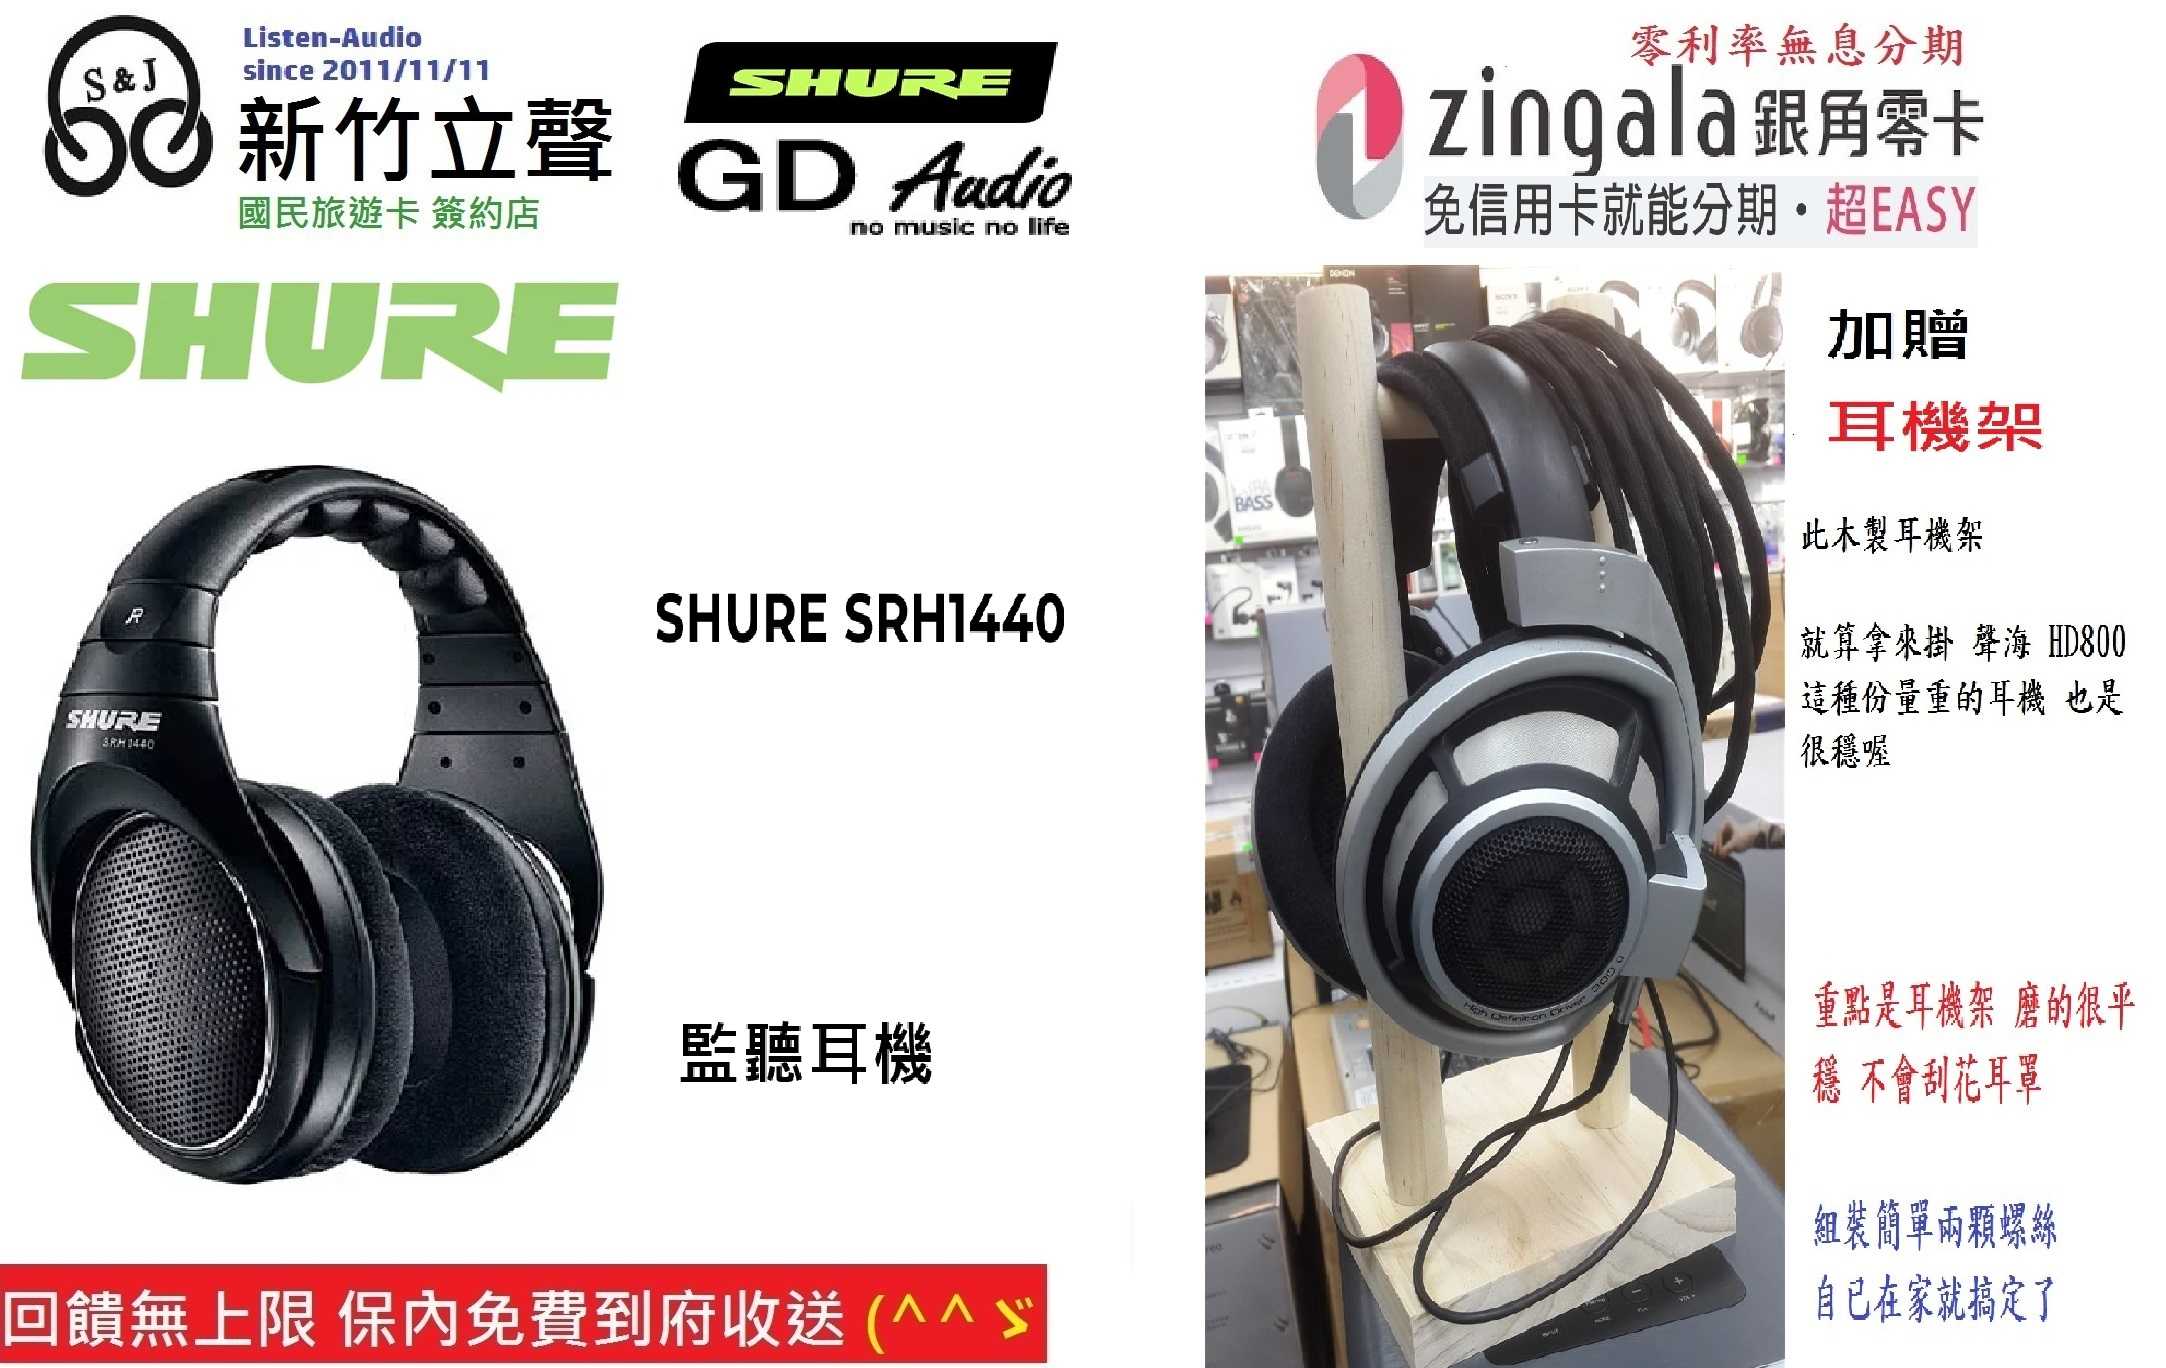 新竹立聲 | SHURE Srh1440 Srh 1440 開放式監聽耳機 台灣GD公司貨 保內免費到府收送 2年保固